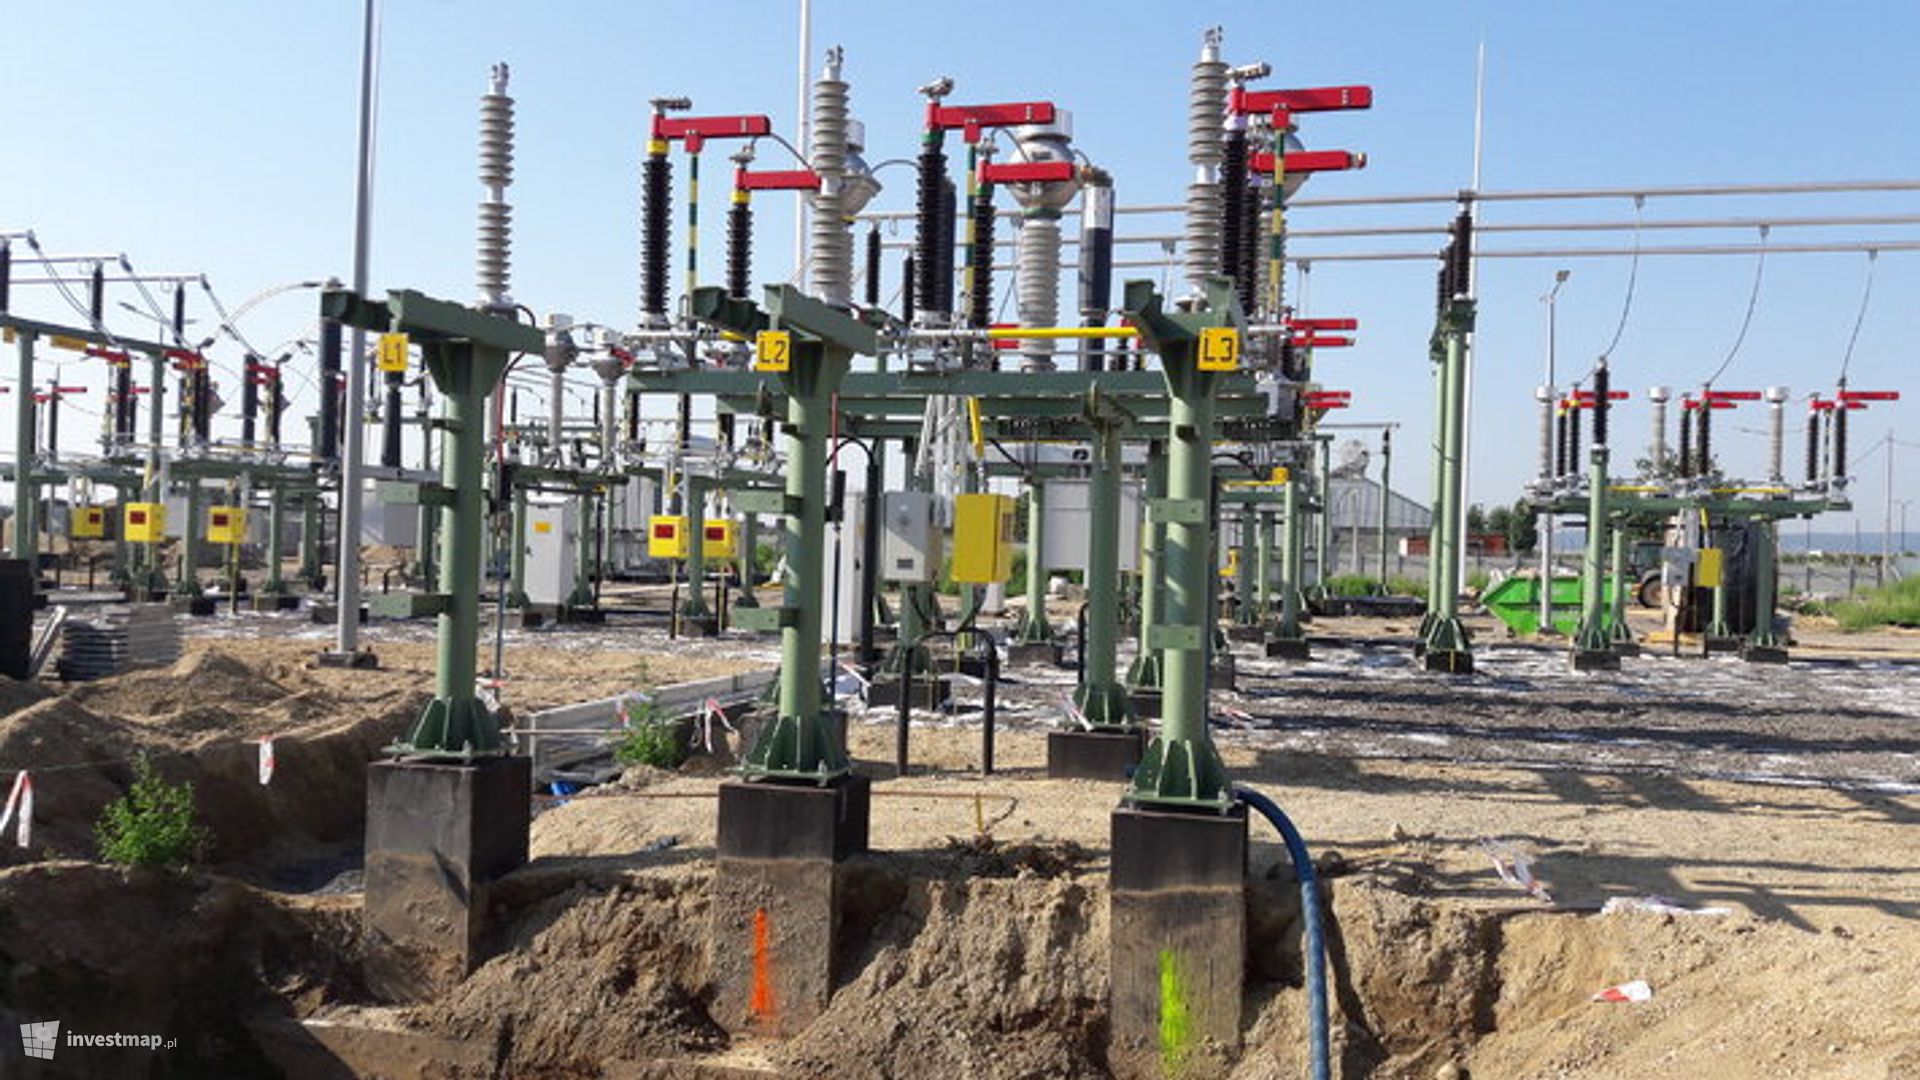 TAURON przeznaczył w ostatnich miesiącach ponad pół miliarda złotych na energetyczny rozwój Dolnego Śląska